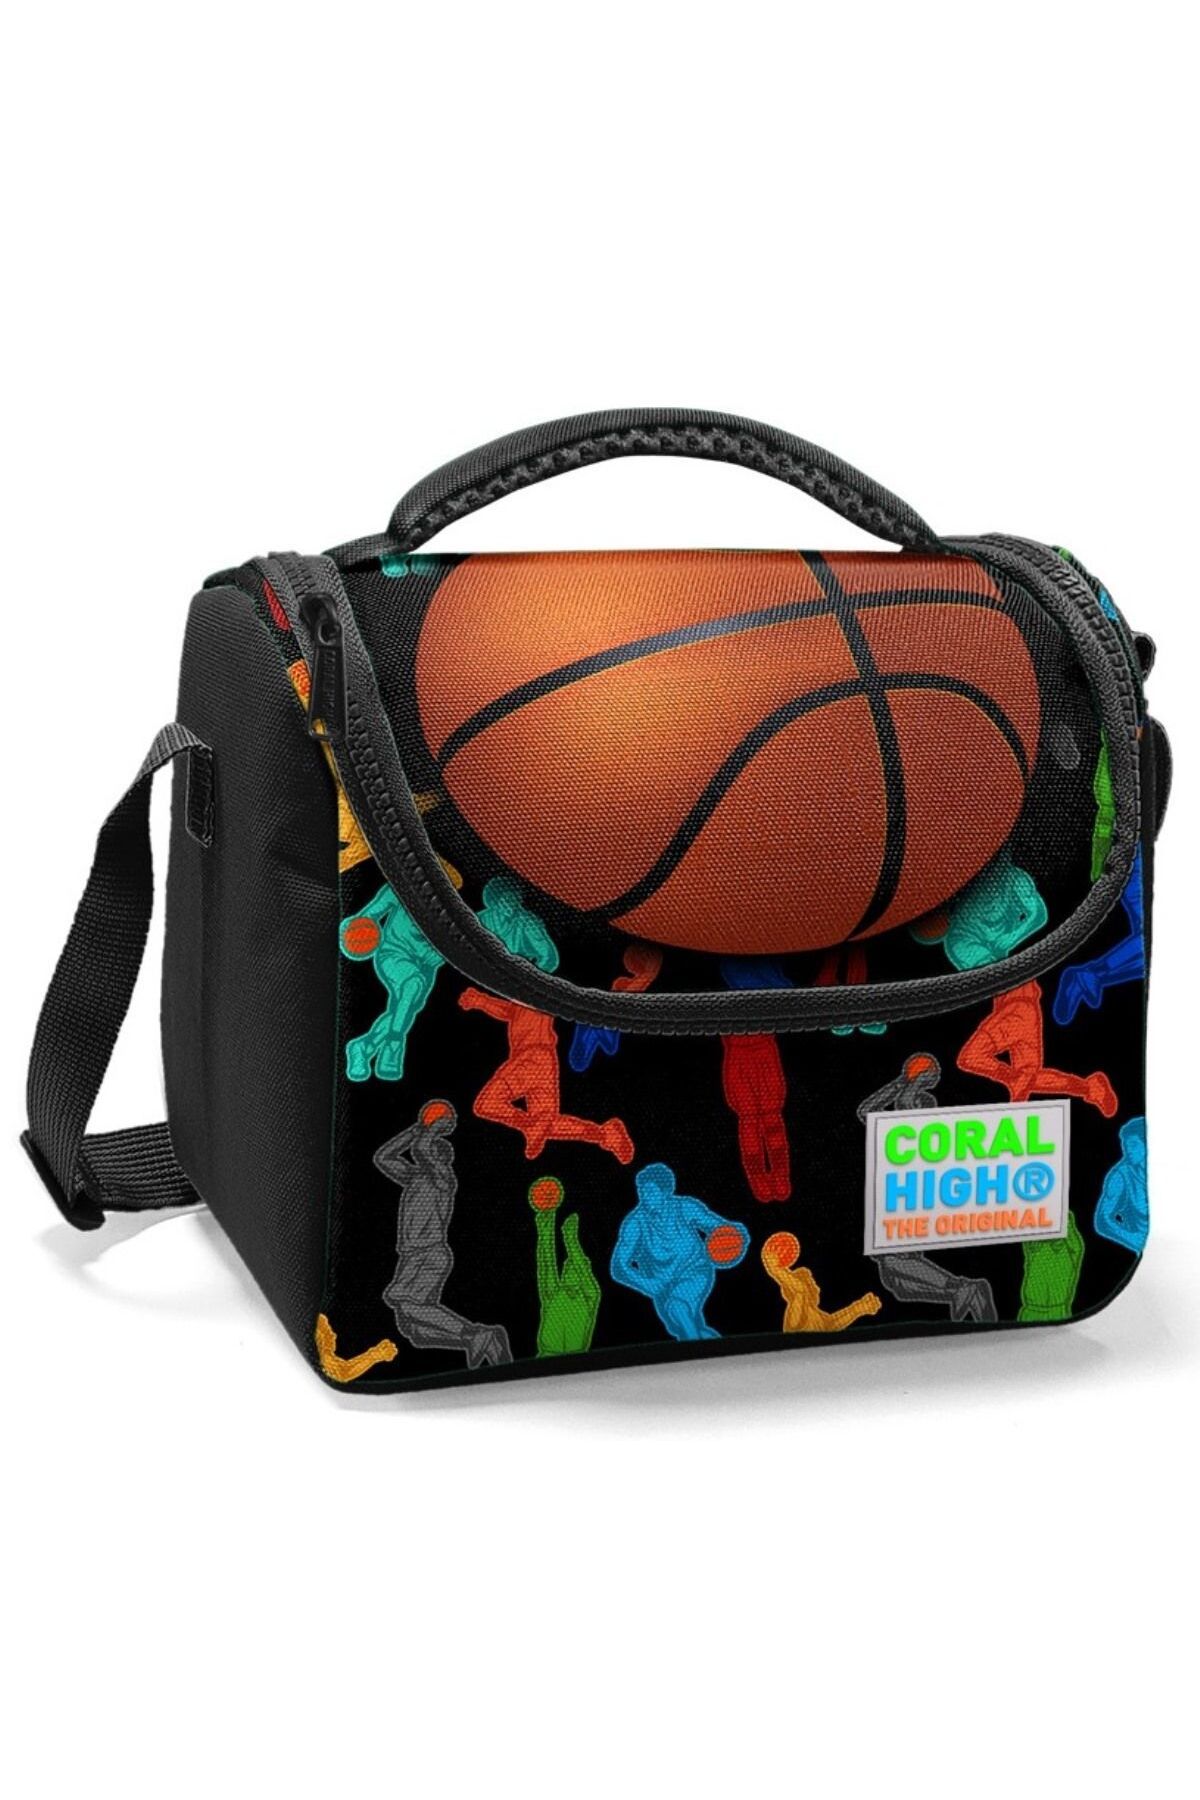 Coral High Siyah Turuncu Basketbol Baskılı Erkek Okul Beslenme Çantası